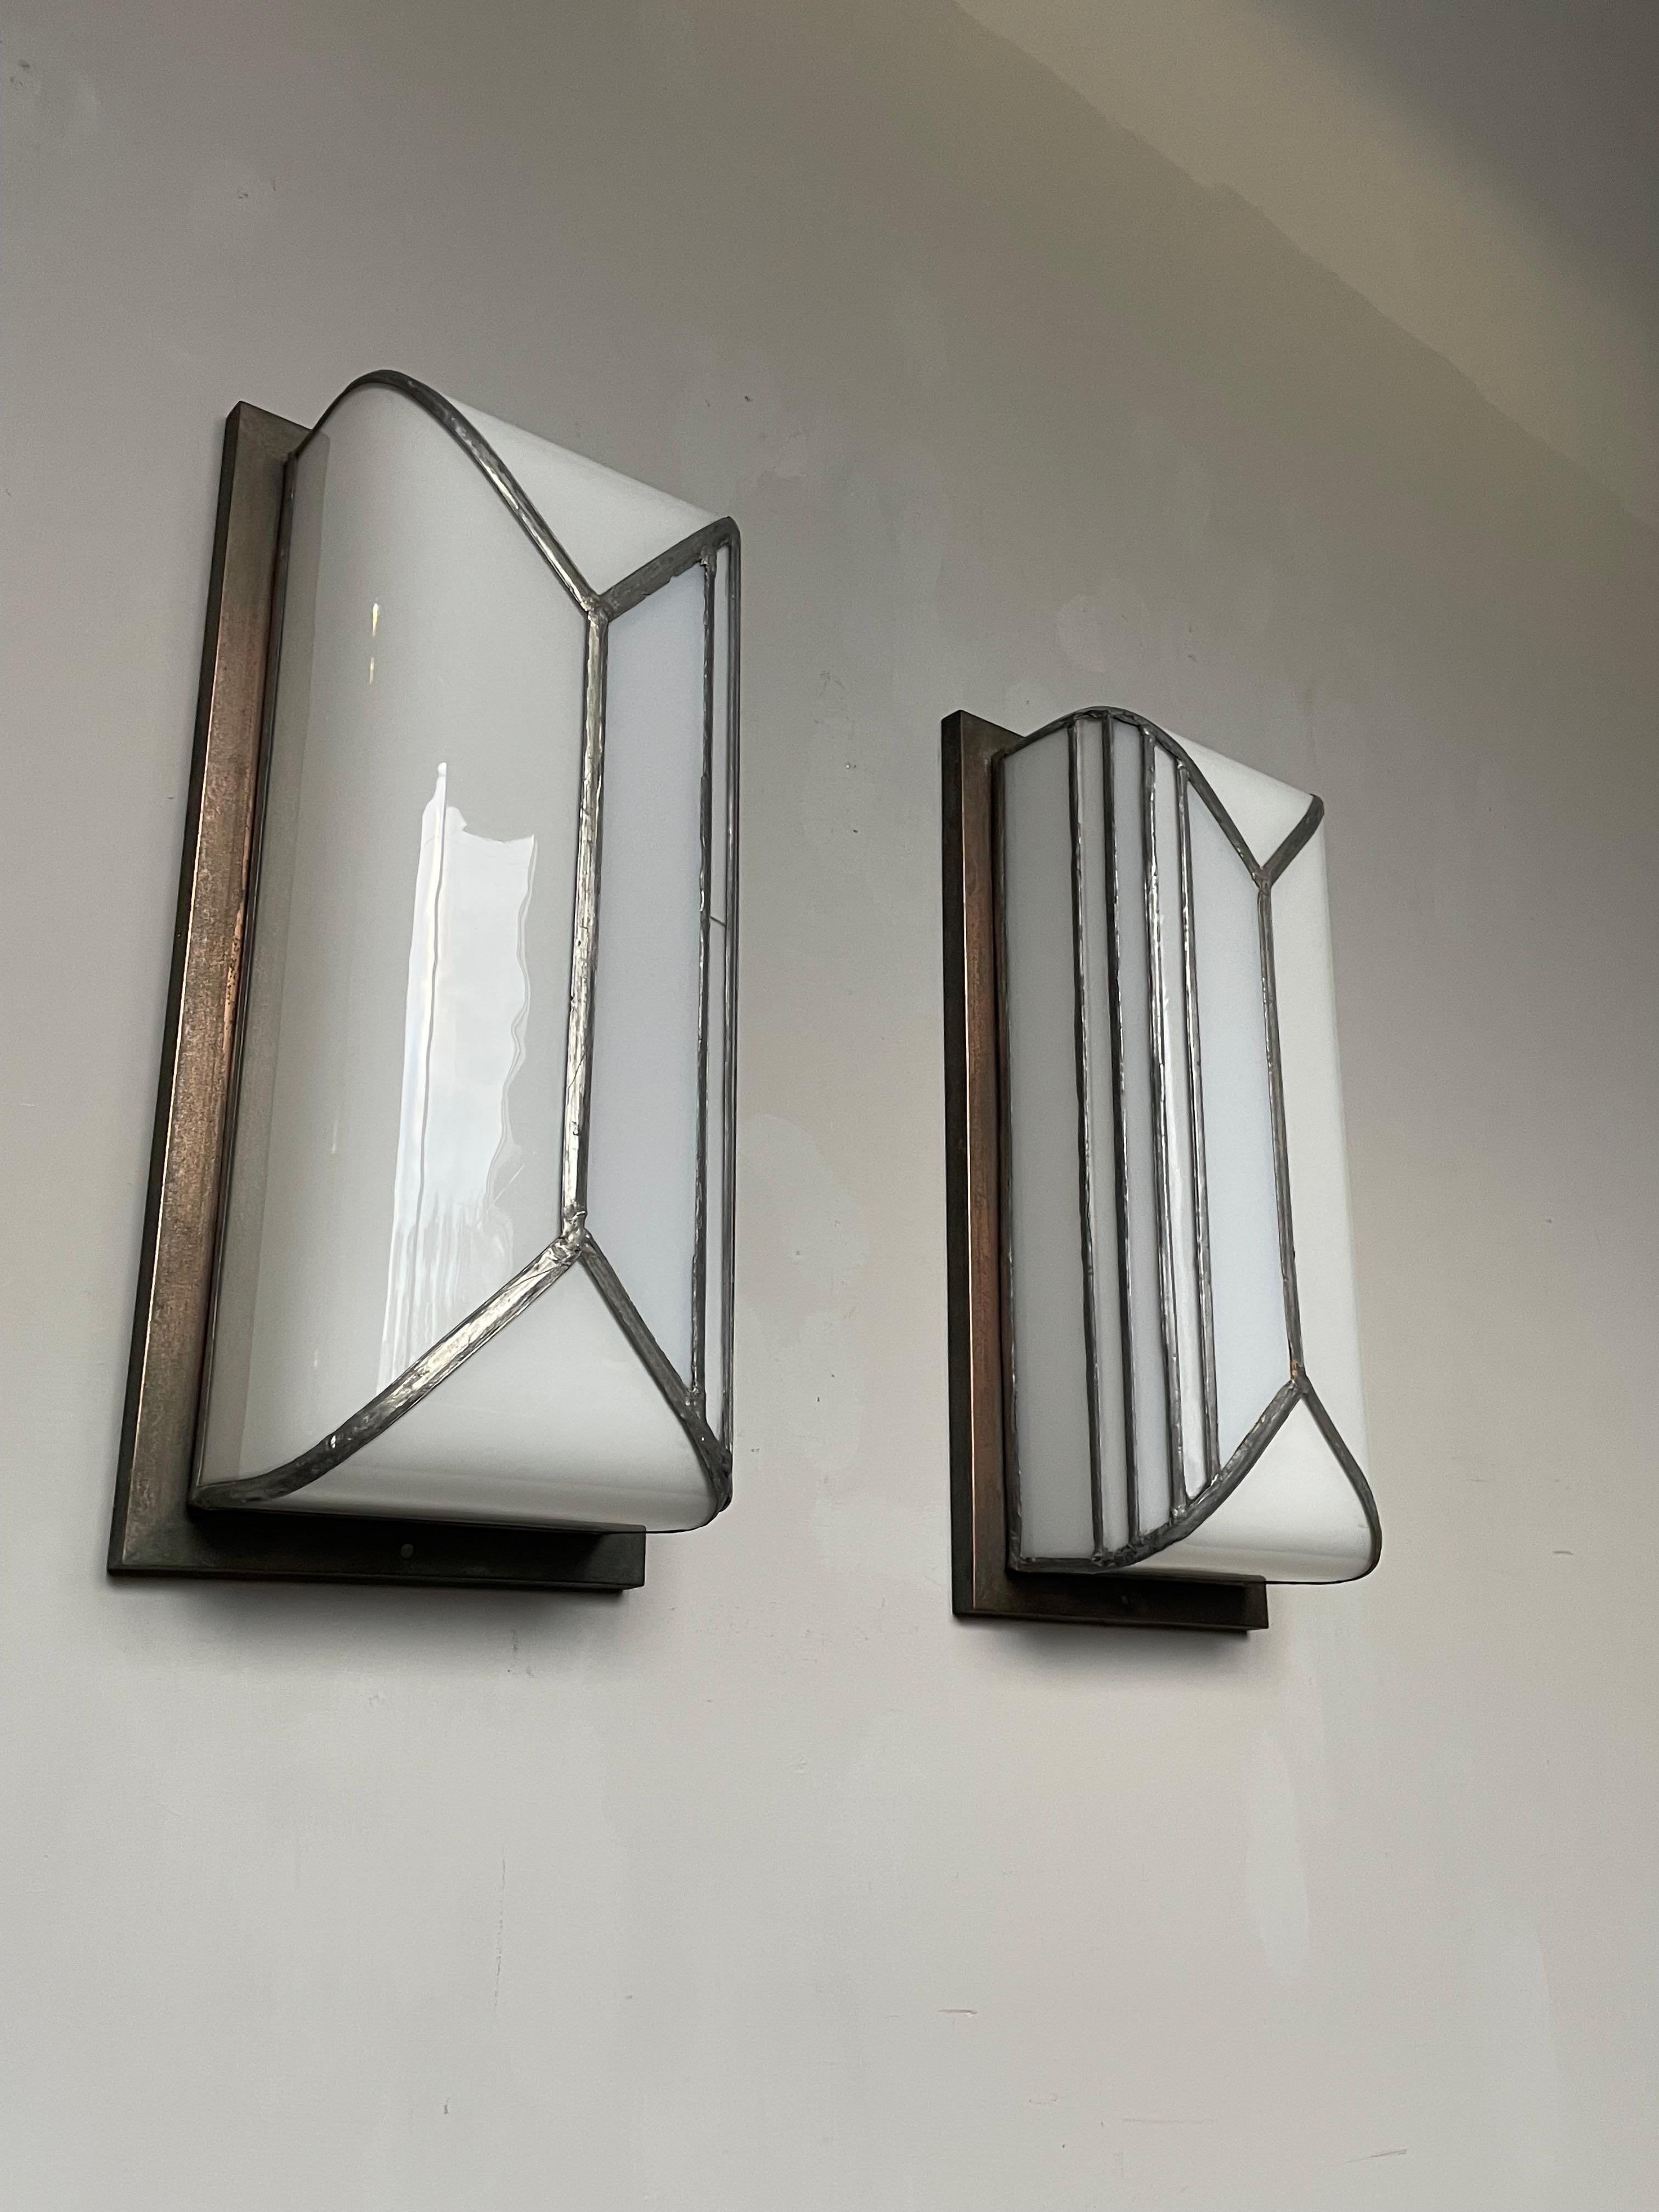 Ein sehr seltenes, handgefertigtes Paar von Art Deco Wandlampen in guter Größe.

Manche Leuchten findet man nur ein einziges Mal im Leben, und das ist bei diesem handgefertigten Paar reinweißer Art-Déco-Wandleuchten aus Opalglas mit Sicherheit der